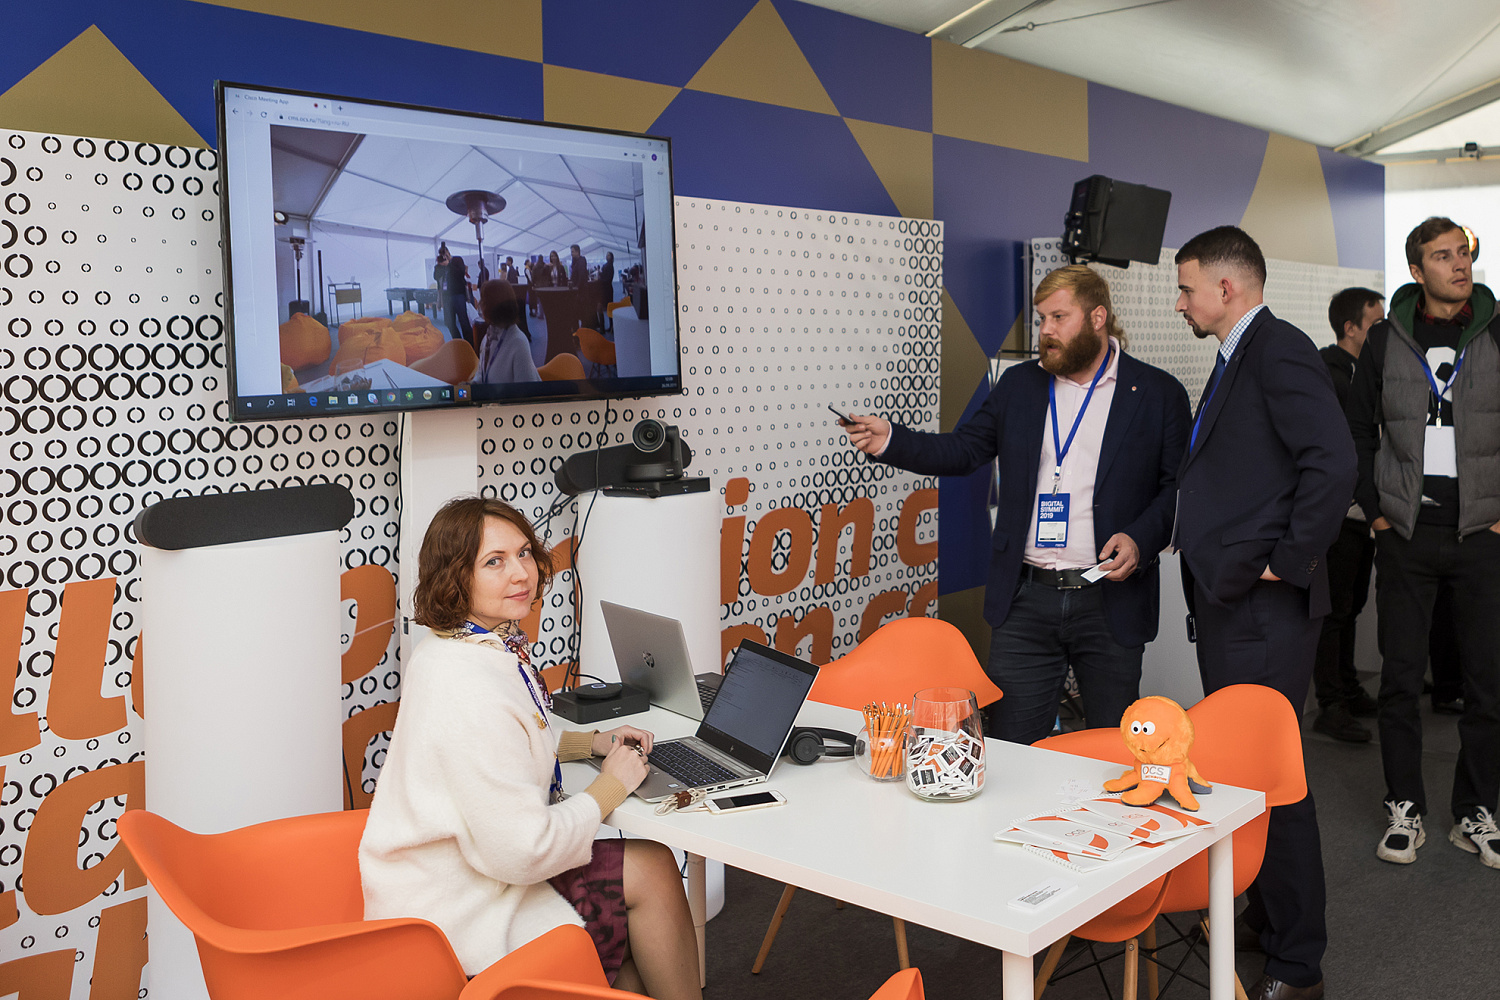 В Нижнем Новгороде состоялась презентация OCS Showroom на международном форуме Digital Summit 2019